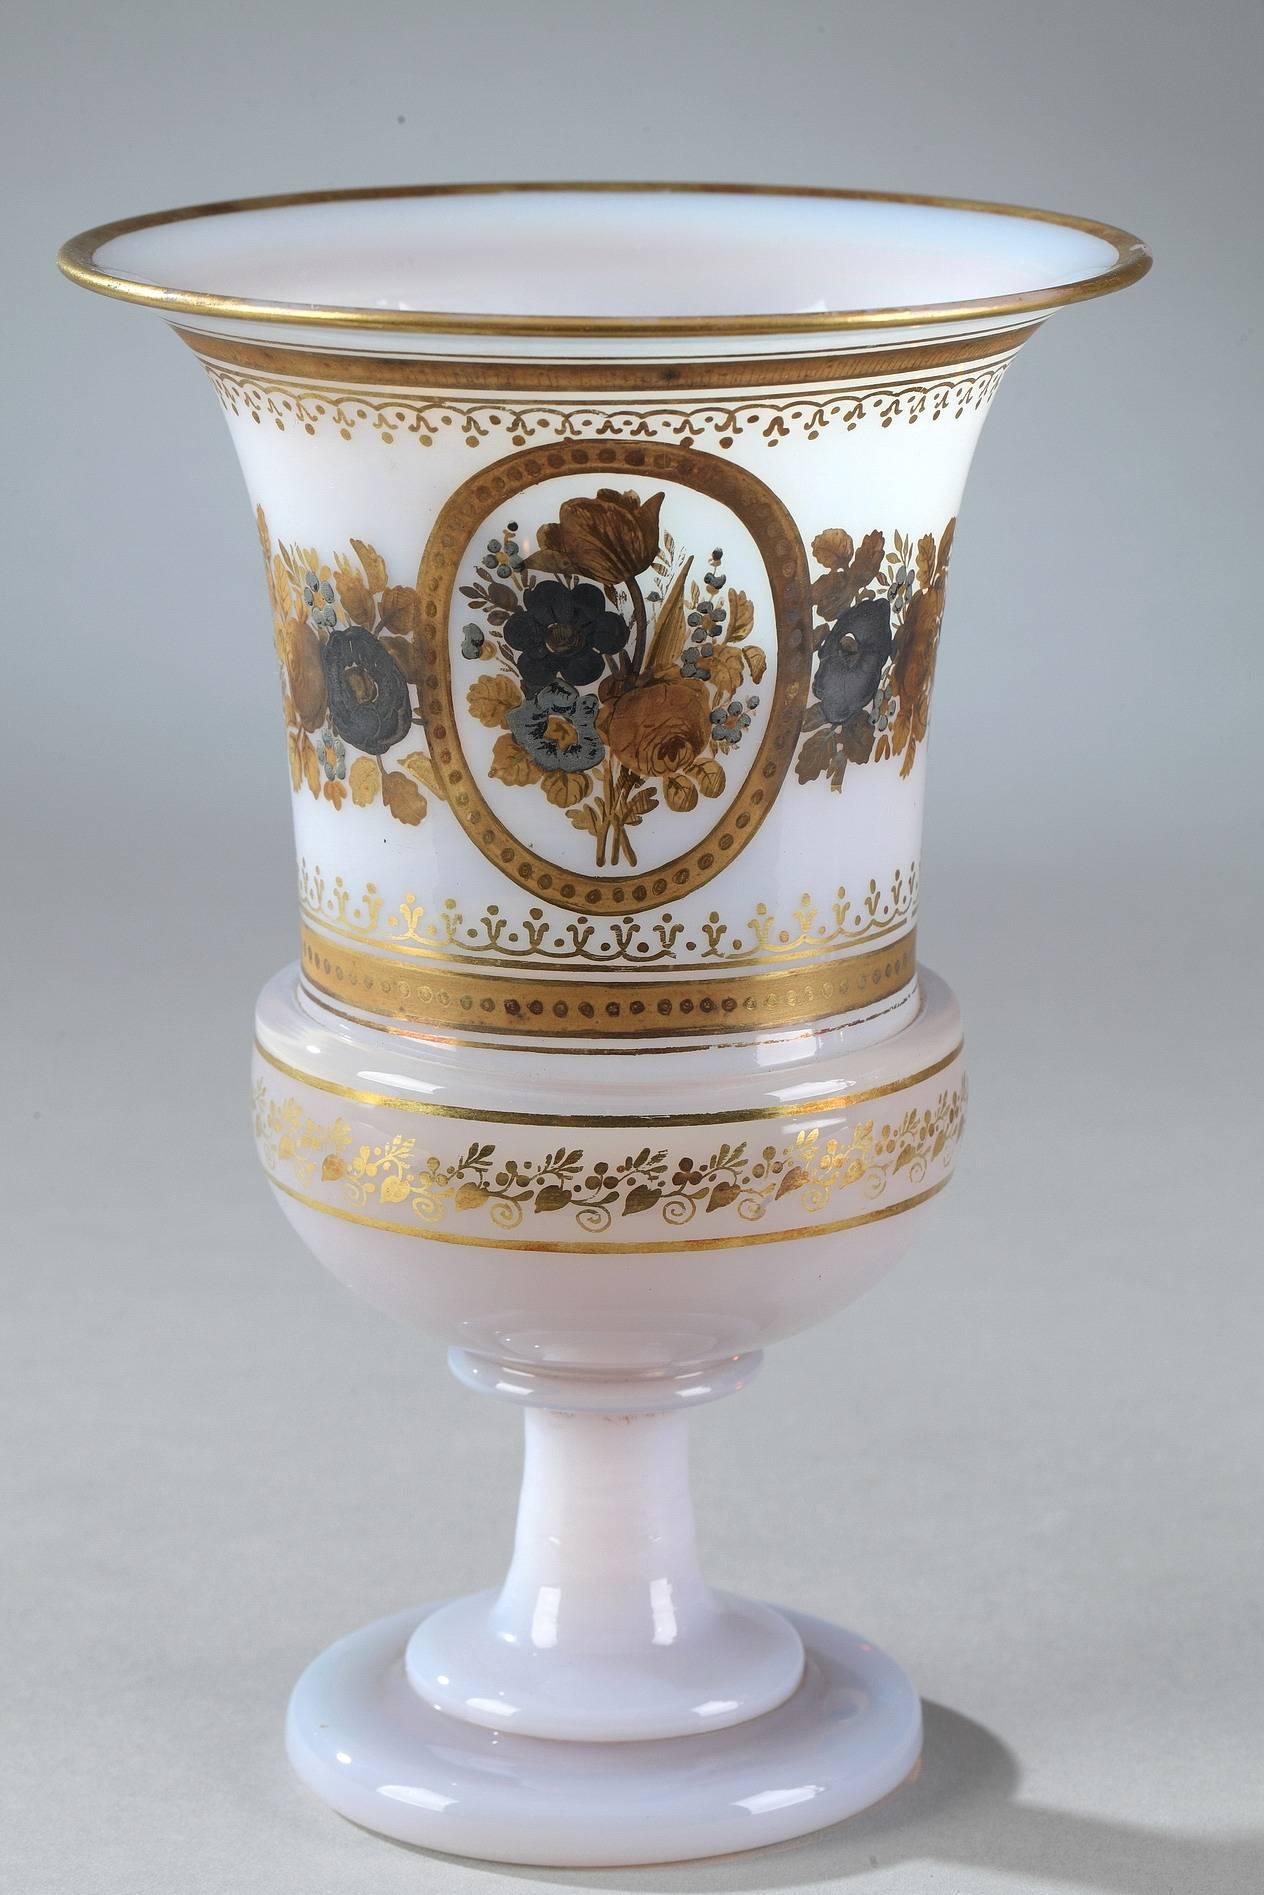 Paire de vases Médicis du début du XIXe siècle en opaline bulle de savon. Les corps sont décorés de deux médaillons représentant deux bouquets de fleurs. Des rayures dorées, des branches et des motifs floraux, de l'or et une couronne bleue